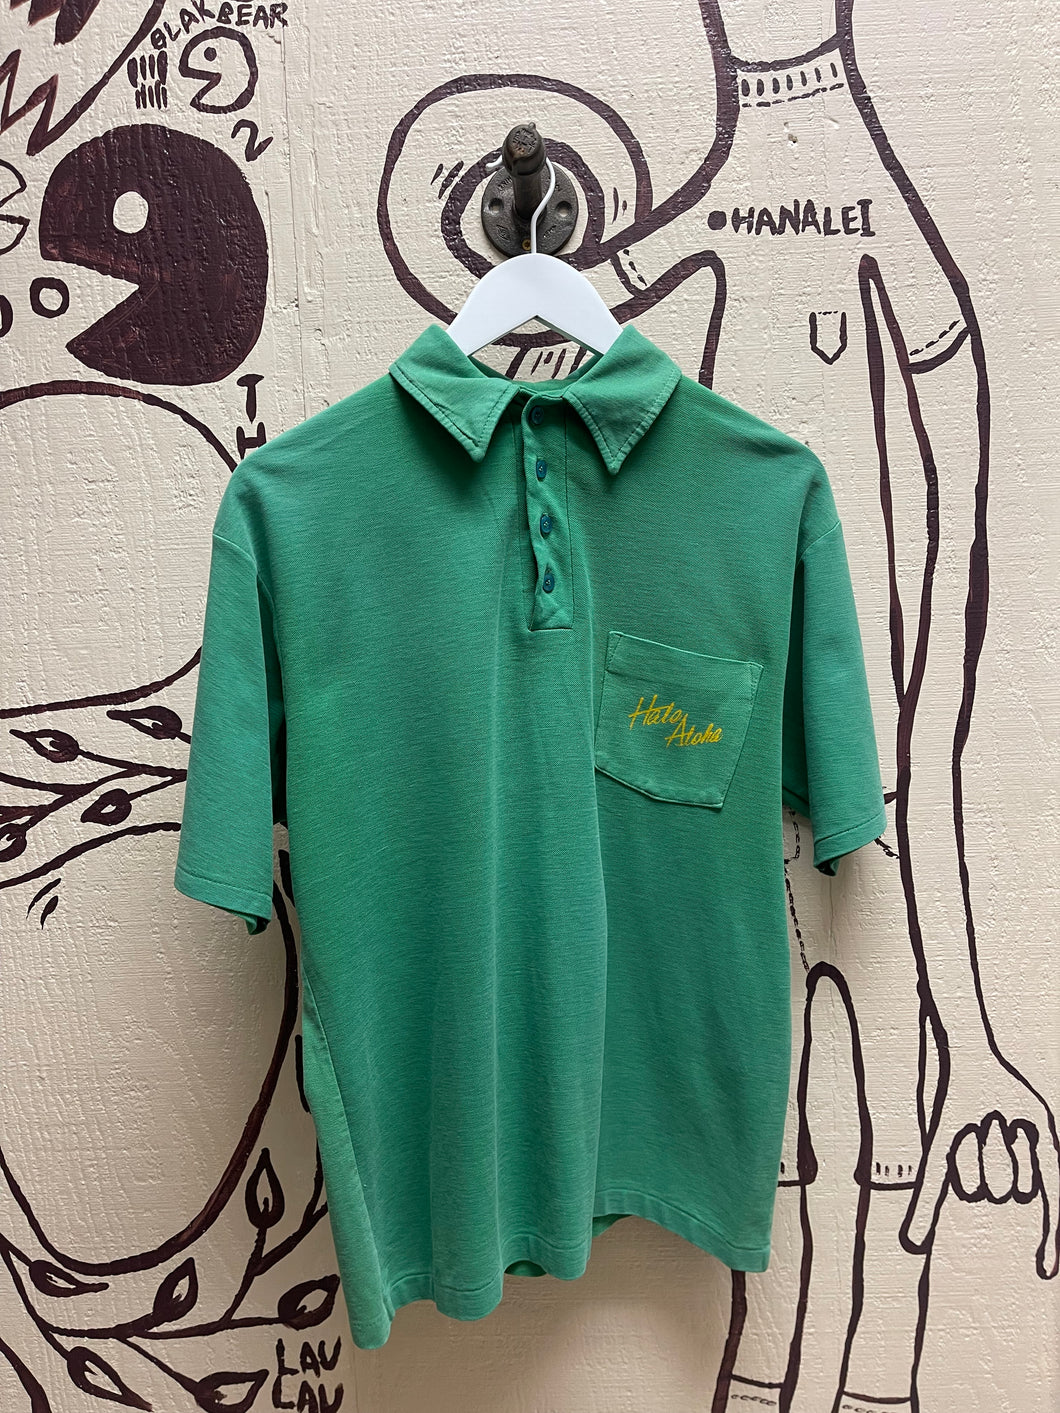 Ohanalei Vintage- “Hale Aloha” Green Polo Shirt